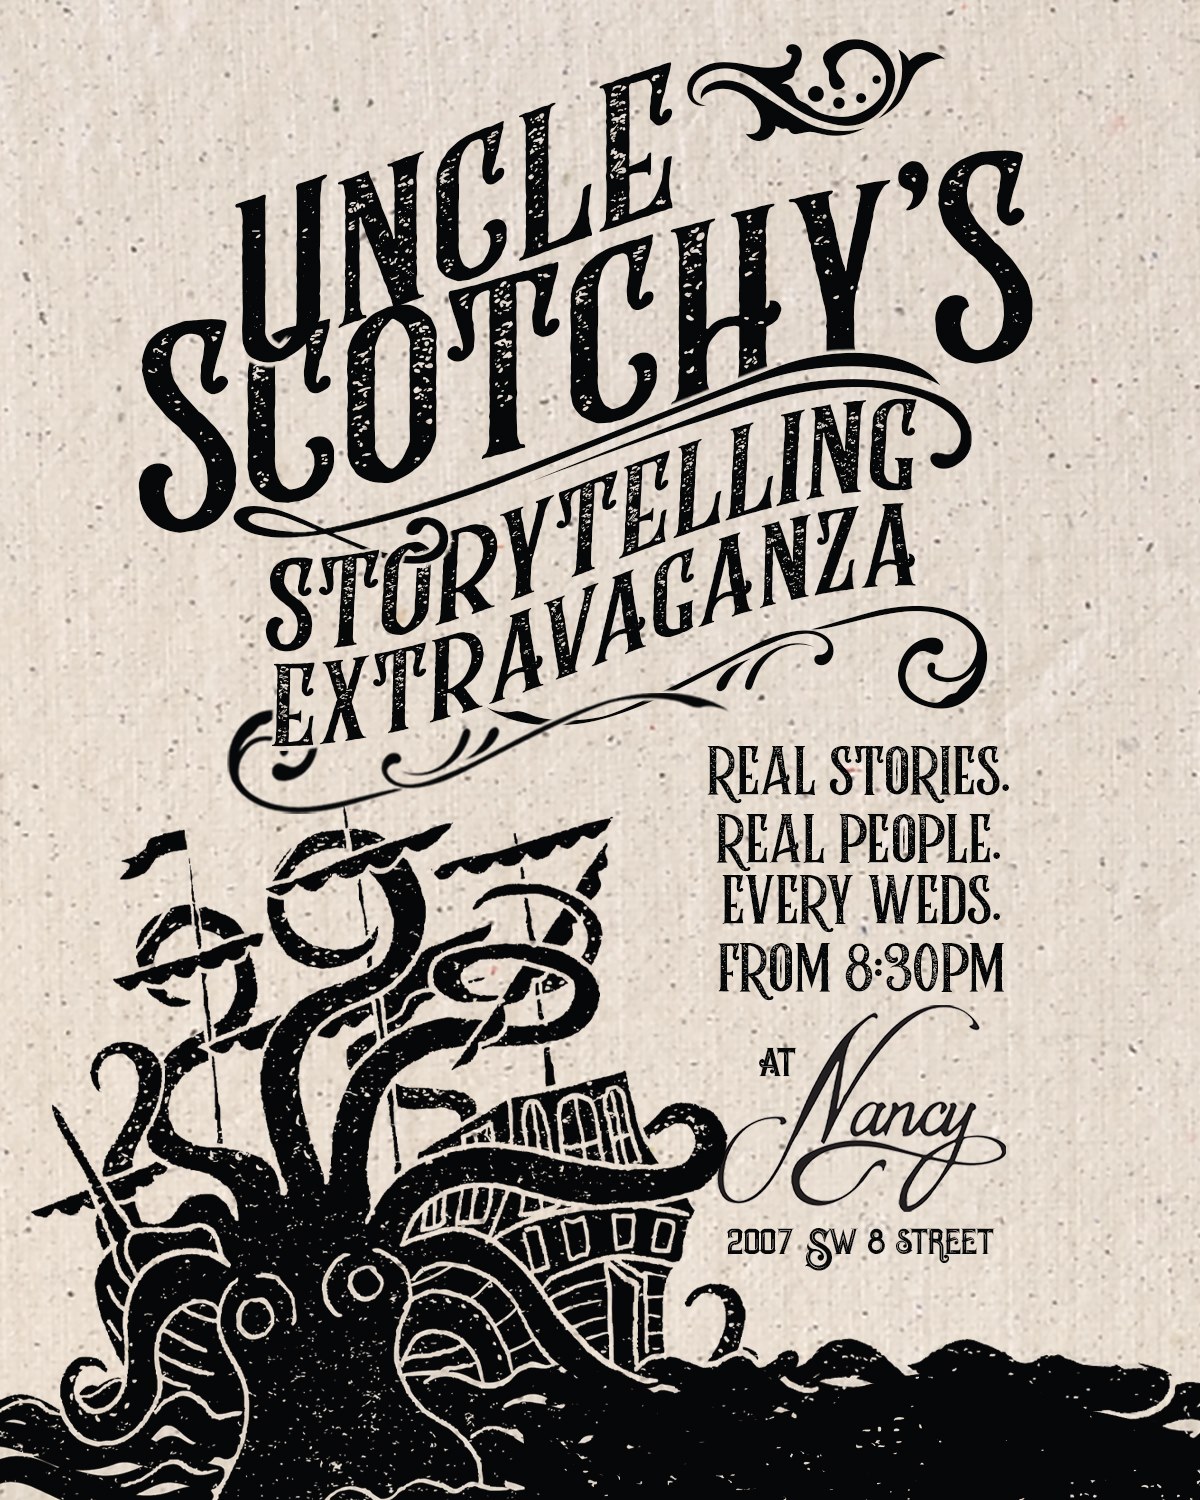 Uncle Scotchy's Storytelling Extravaganza at Bar Nancy